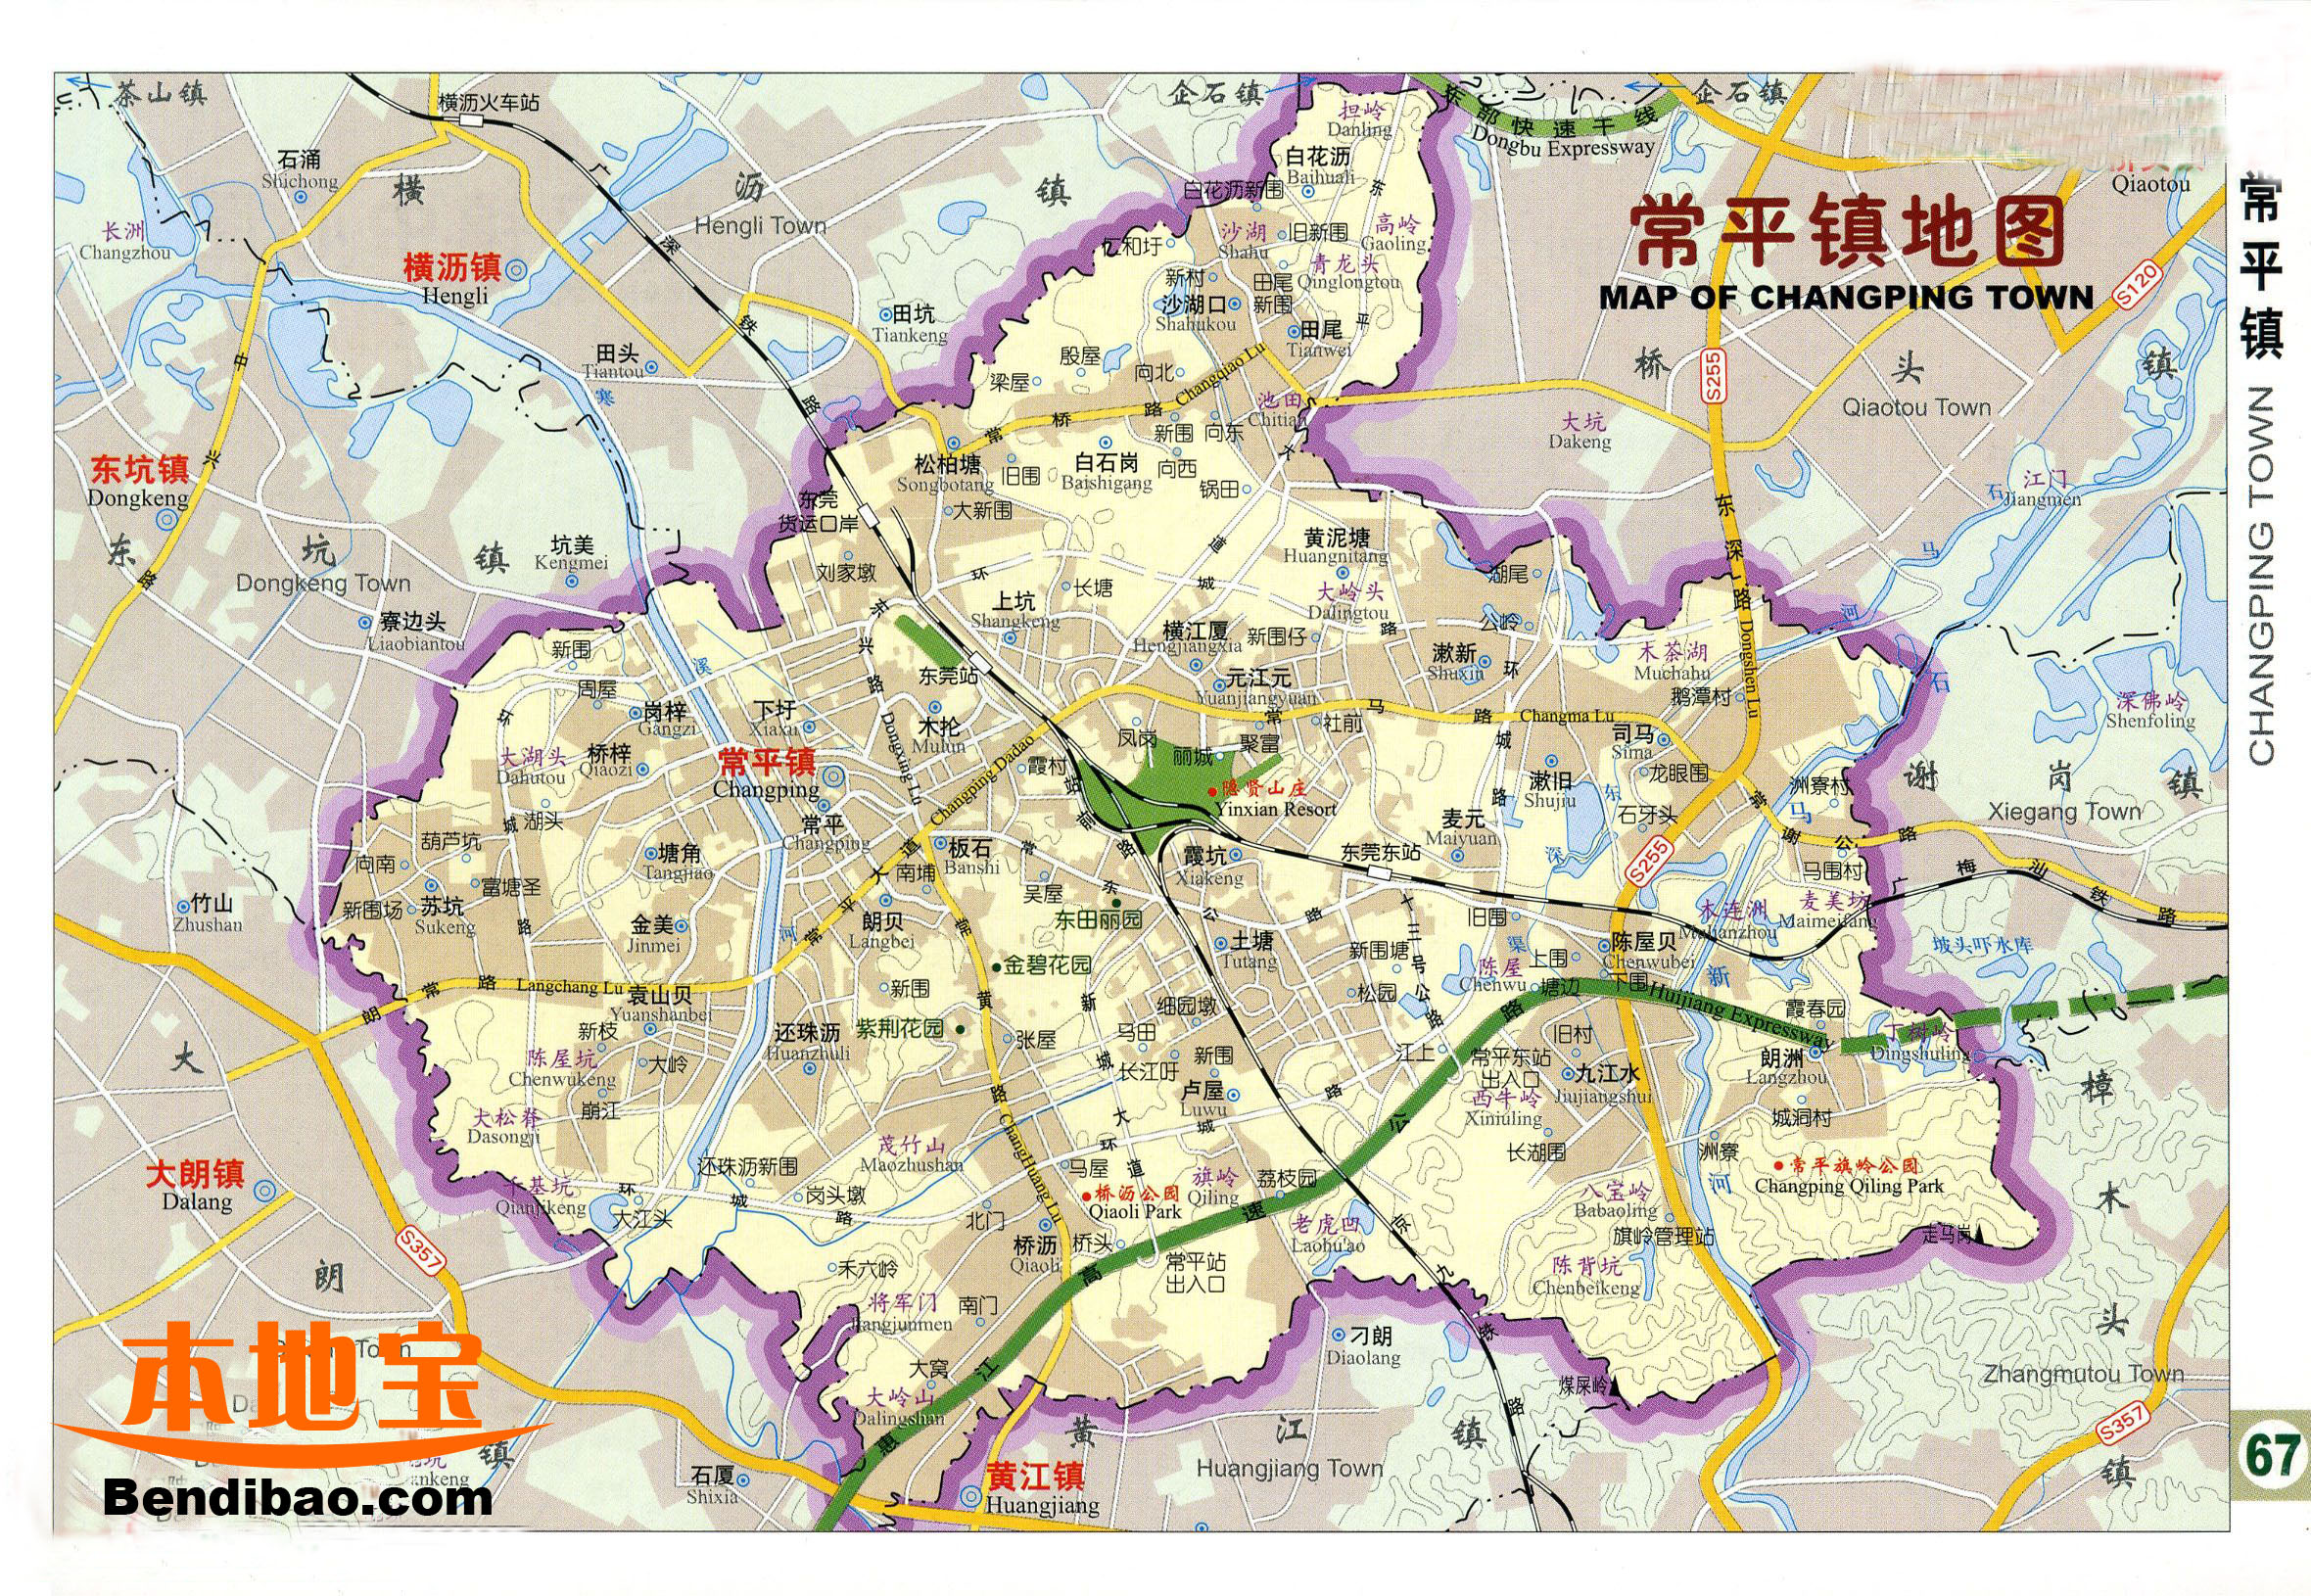 东莞地图|东莞地图全图高清版大图片|旅途风景图片网|www.visacits.com